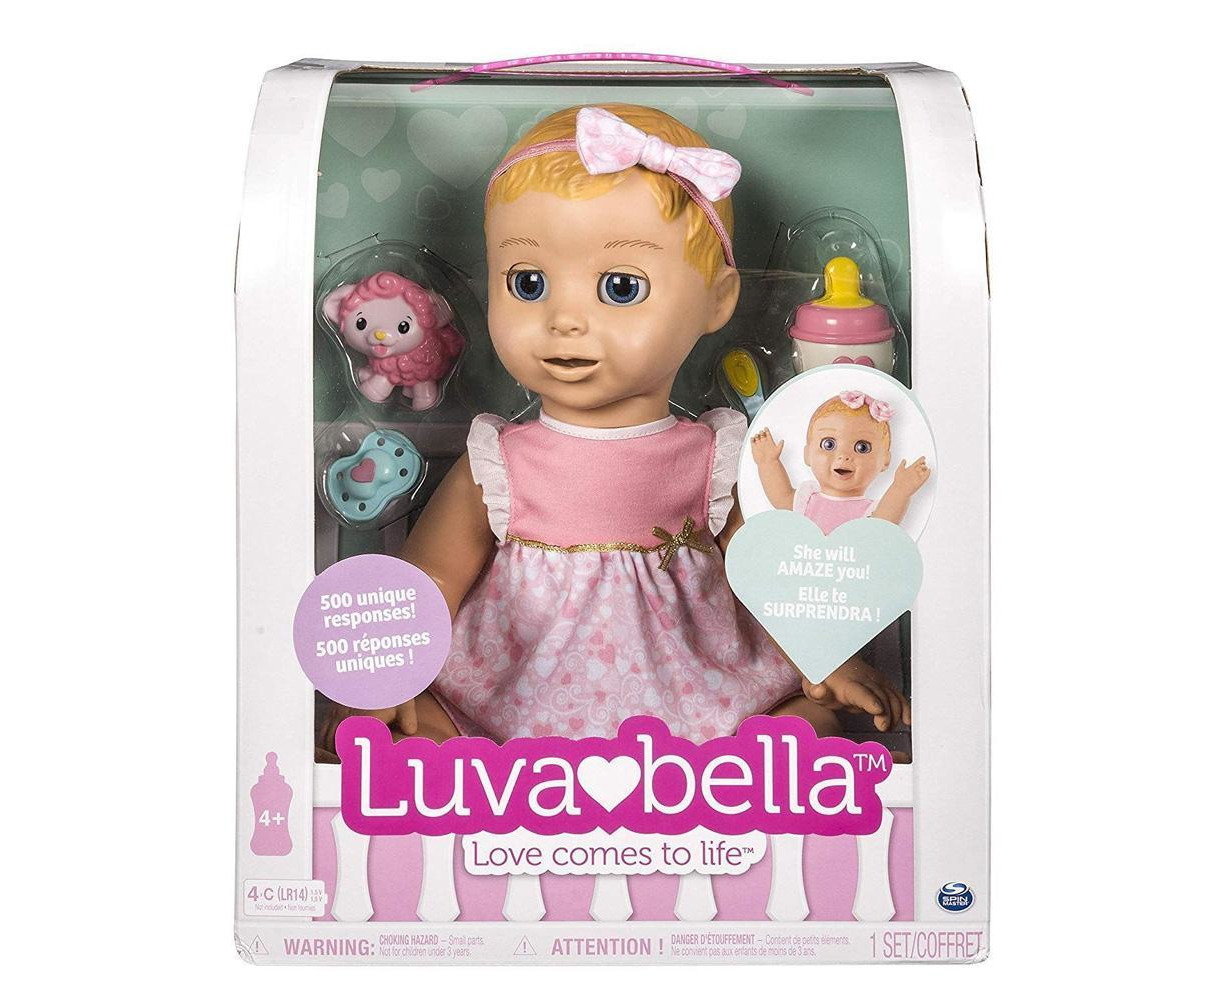 luvabella doll target australia